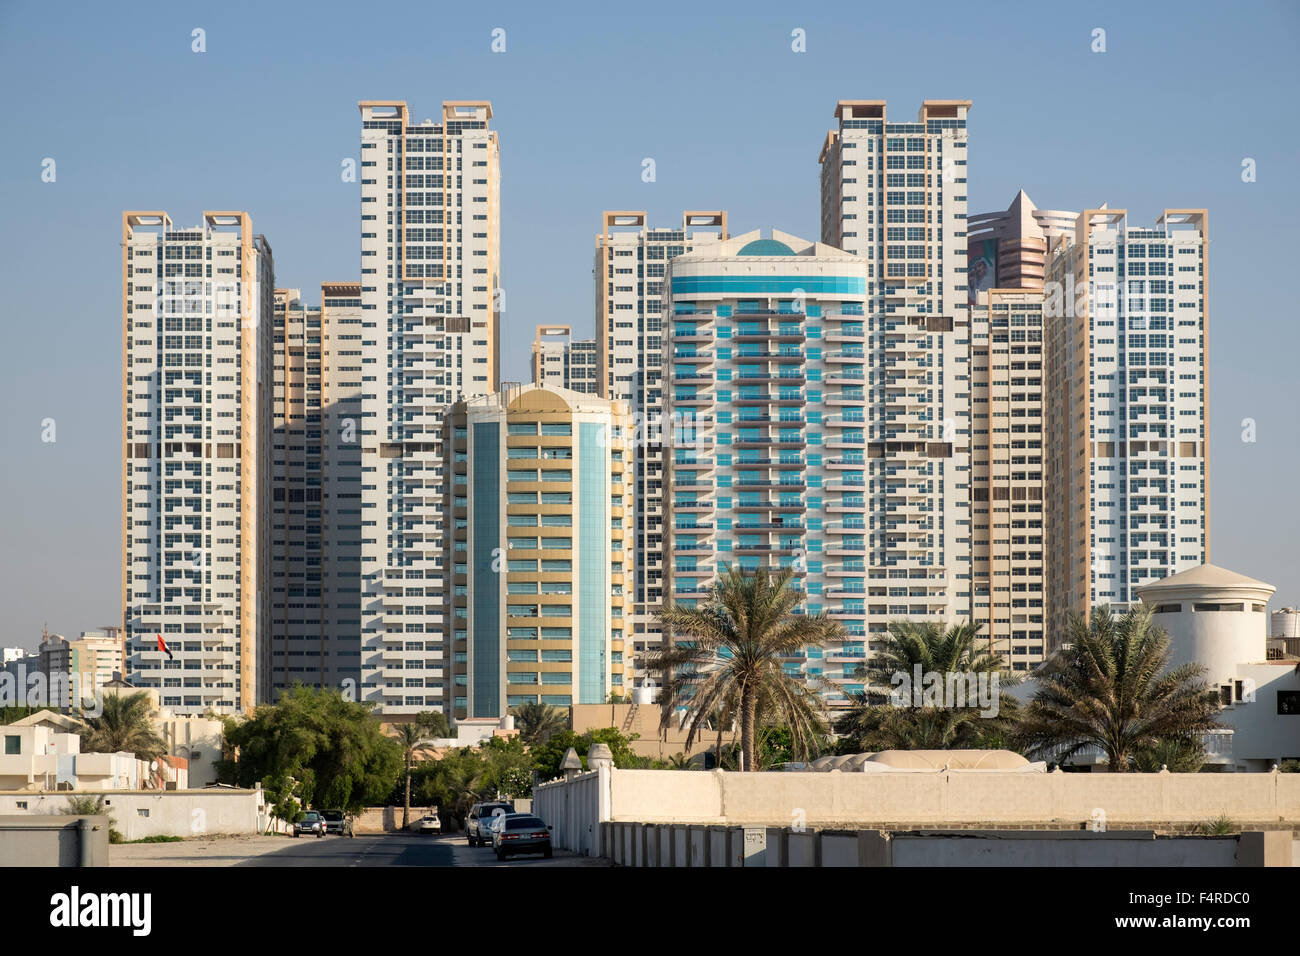 La vista de los modernos altos bloques de apartamentos residenciales en el emirato de Ajman, en los Emiratos Árabes Unidos Foto de stock